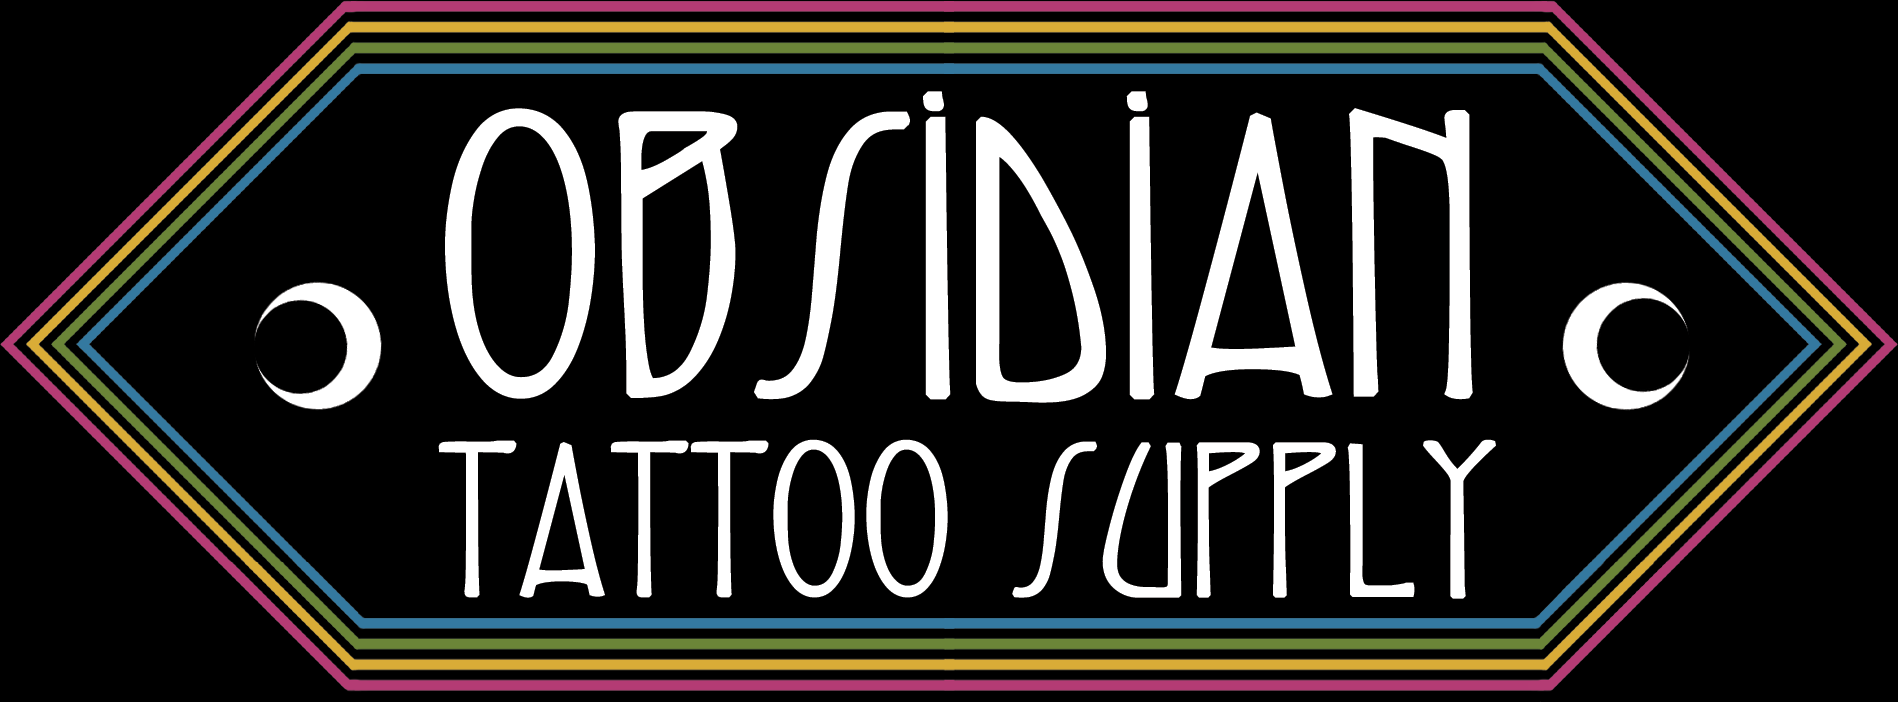 KINGS TATTOO SUPPLY  Tattoo Supply Tattoo Machine Tattoo Shops